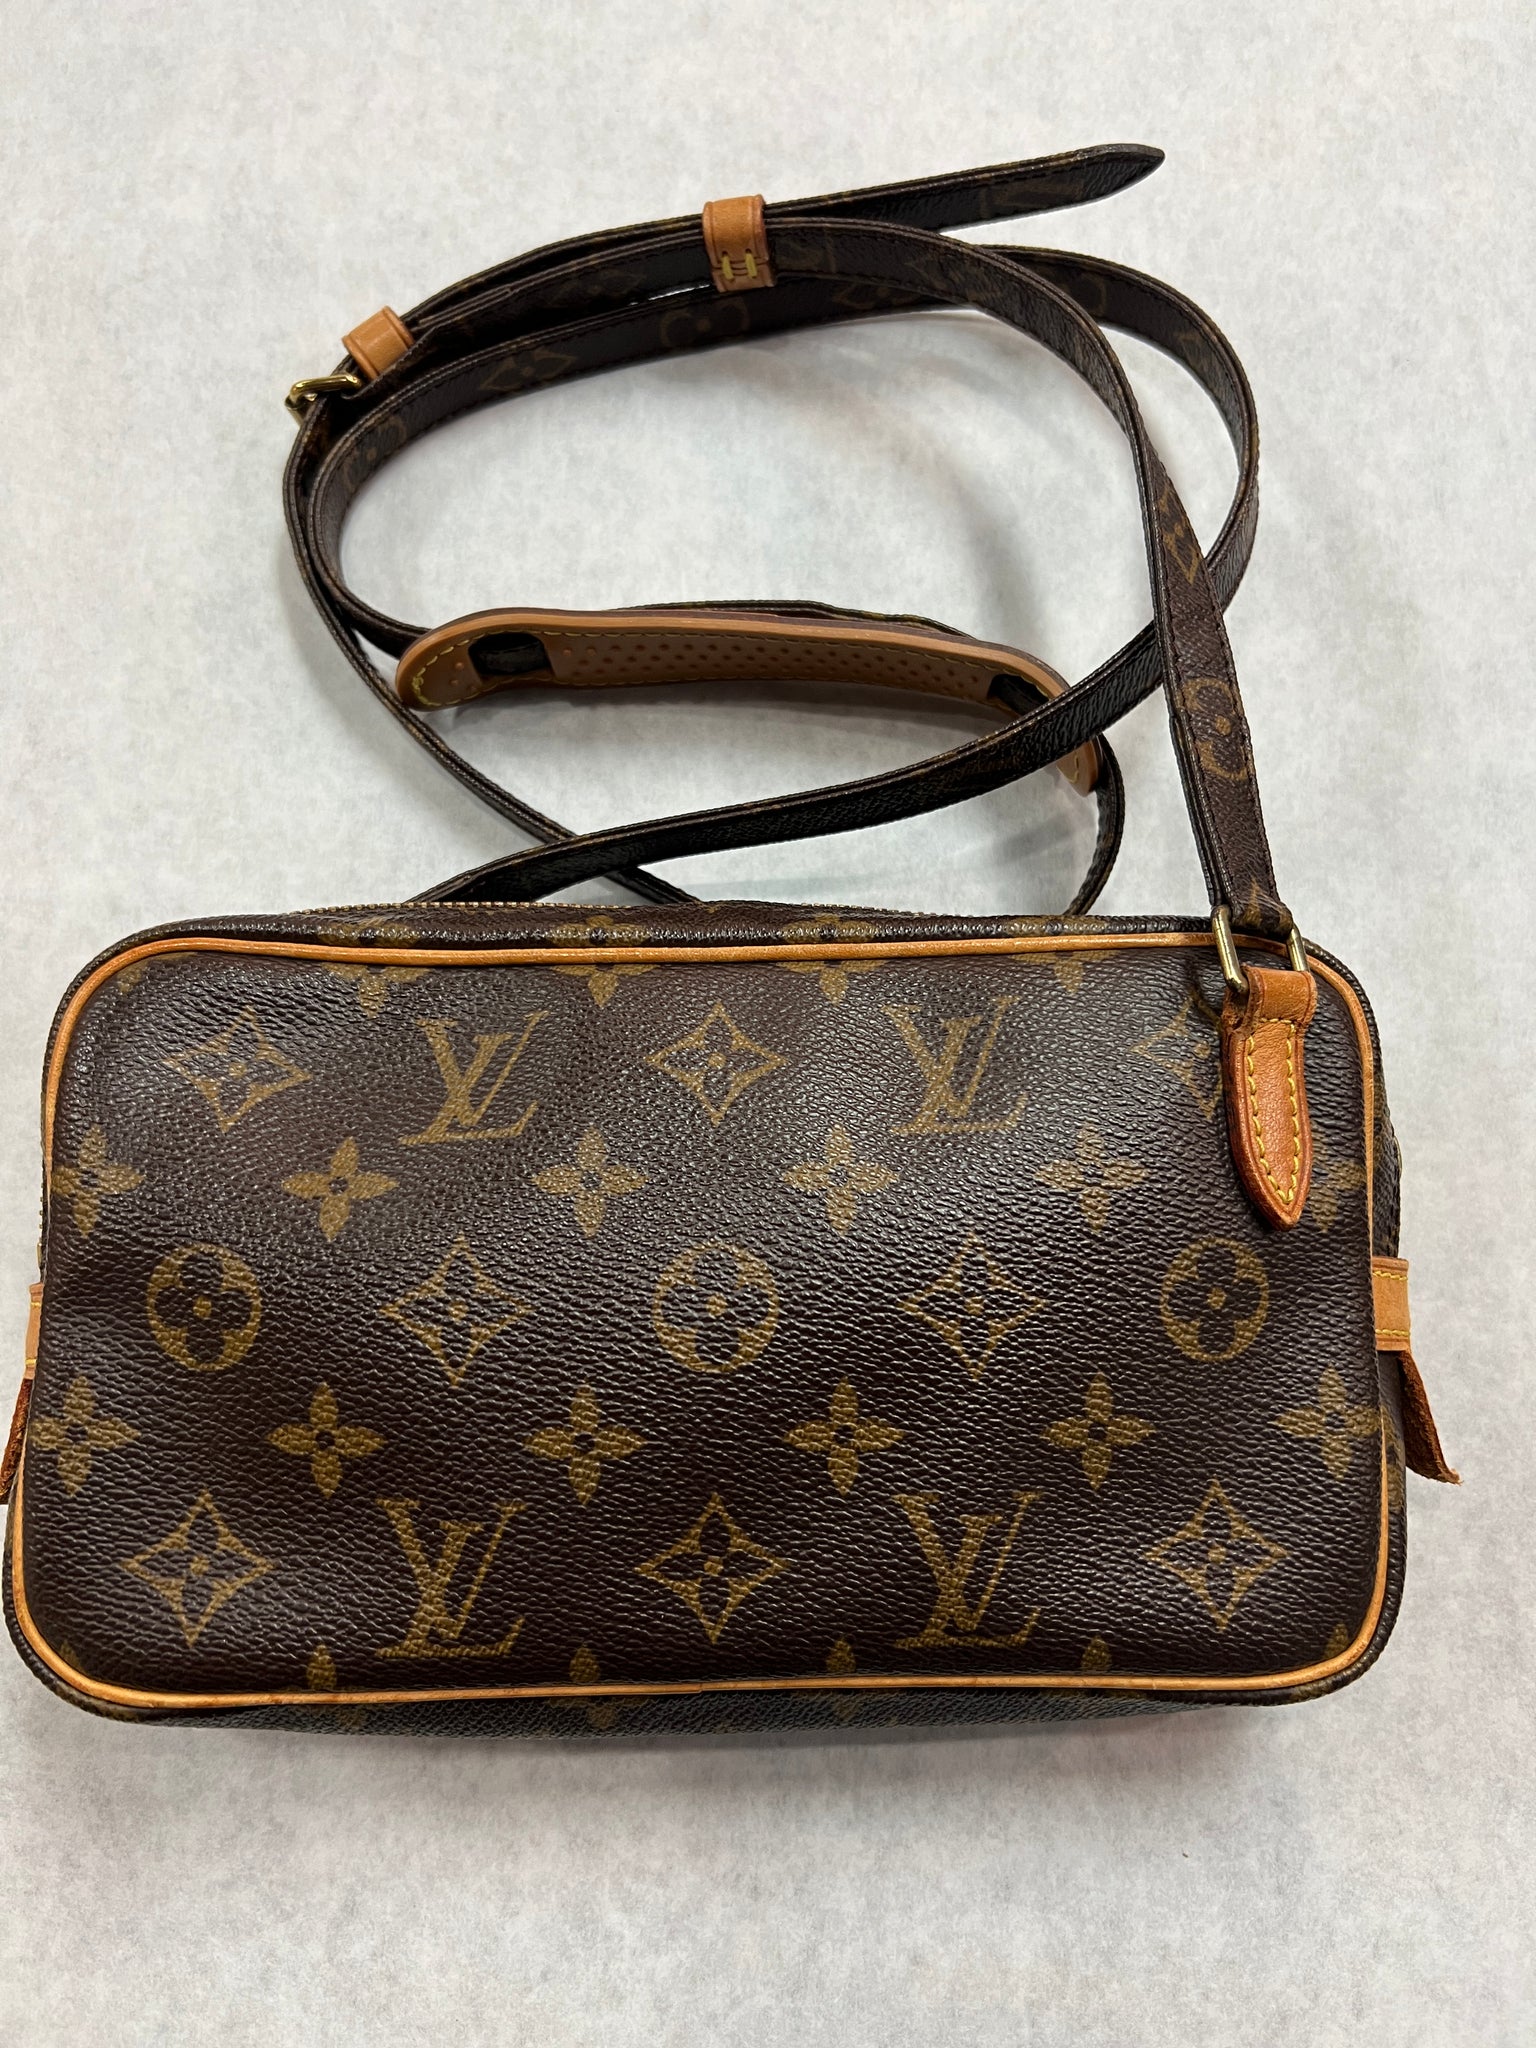 Louis Vuitton Marly Handbag 387706